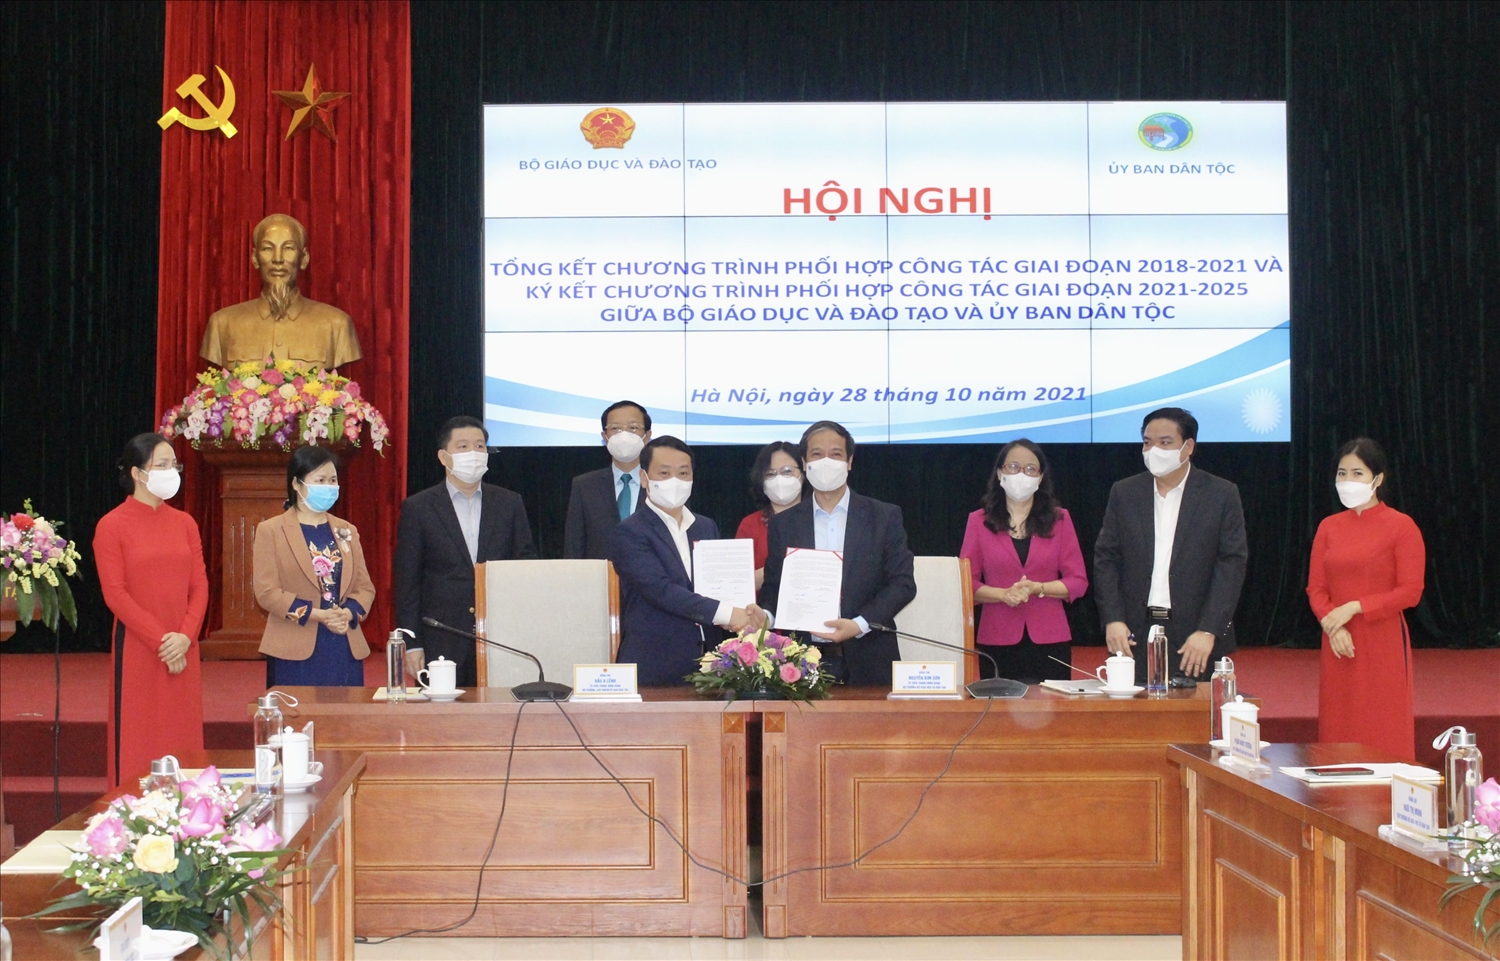 Bộ trưởng, Chủ nhiệm UBDT Hầu A Lềnh và Bộ trưởng Bộ GD&ĐT Nguyễn Kim Sơn ký kết Chương trình phối hợp công tác giai đoạn 2021-2025